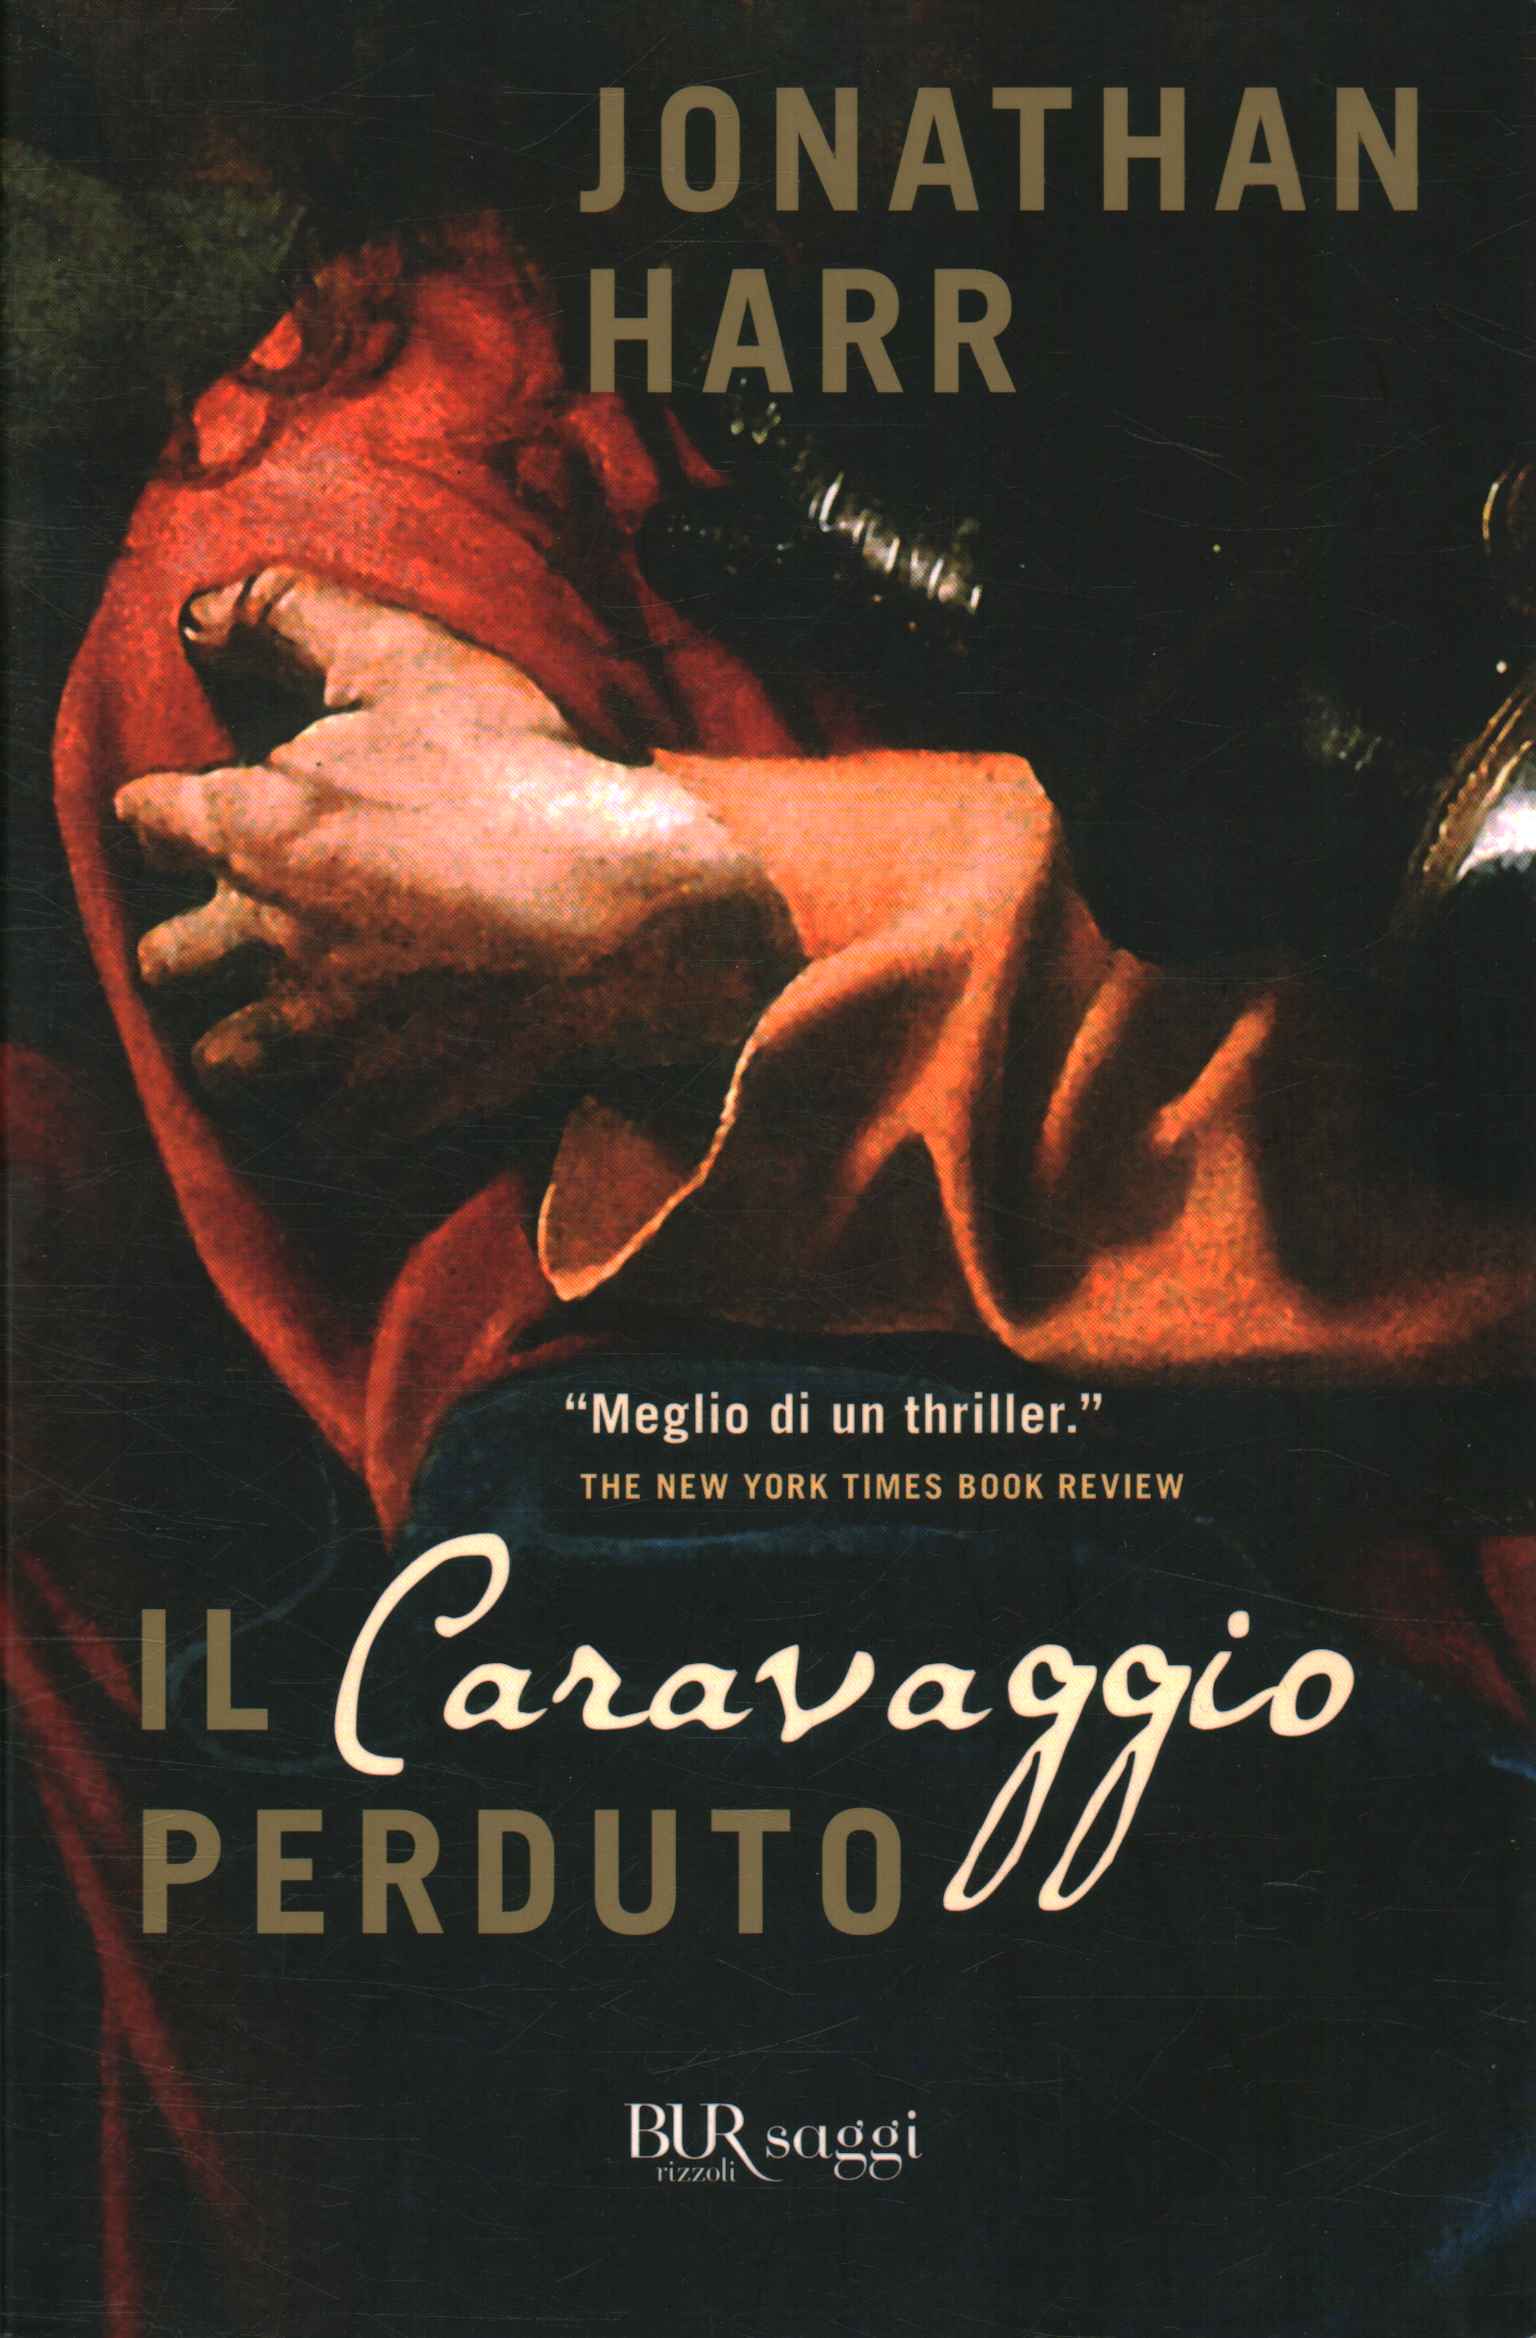 The lost Caravaggio